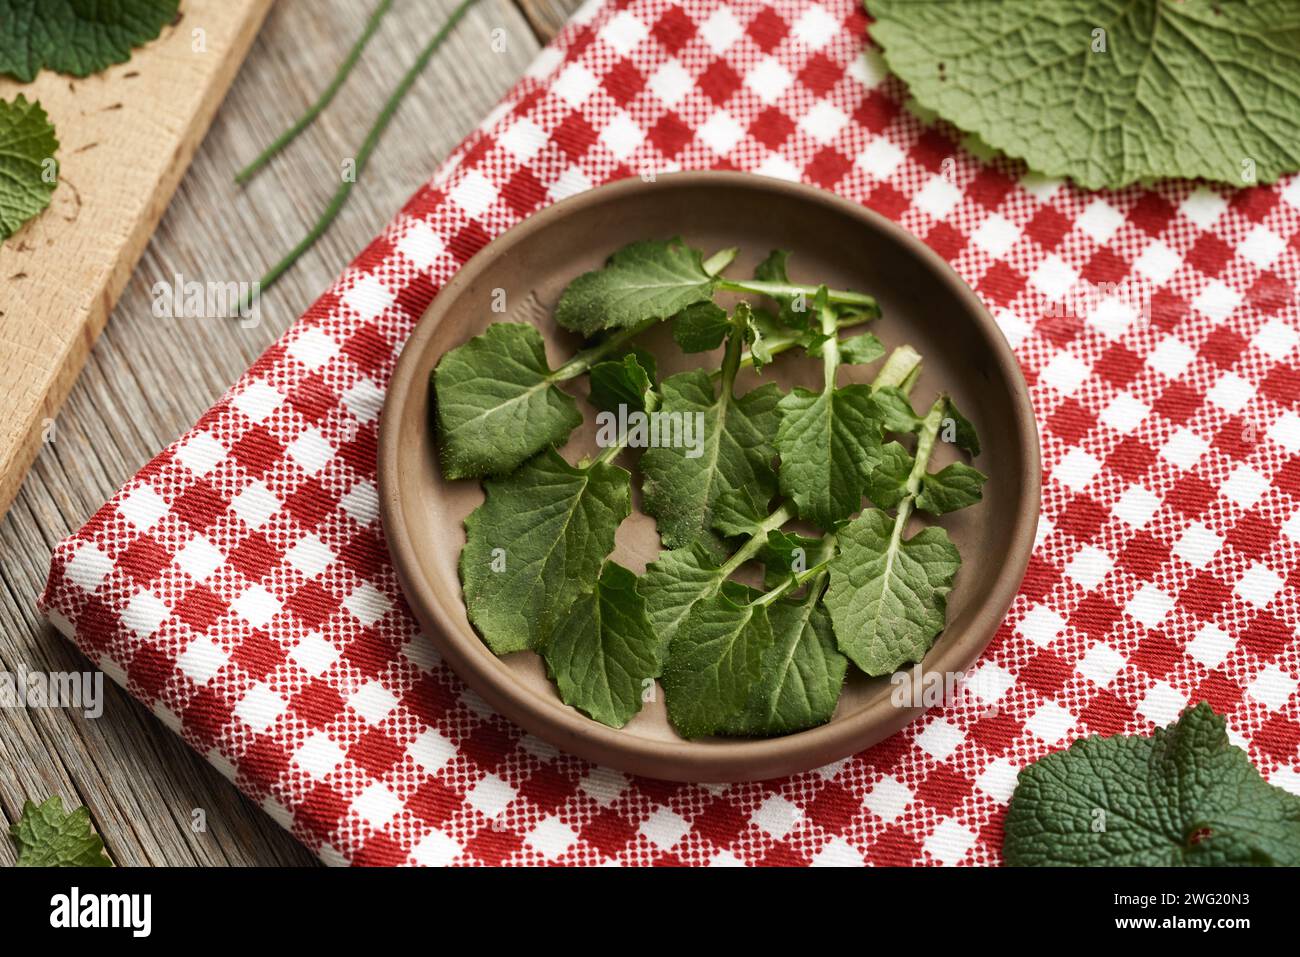 Foglie fresche di nipplewort raccolte in inverno - pianta commestibile selvatica, con senape all'aglio in primo piano Foto Stock